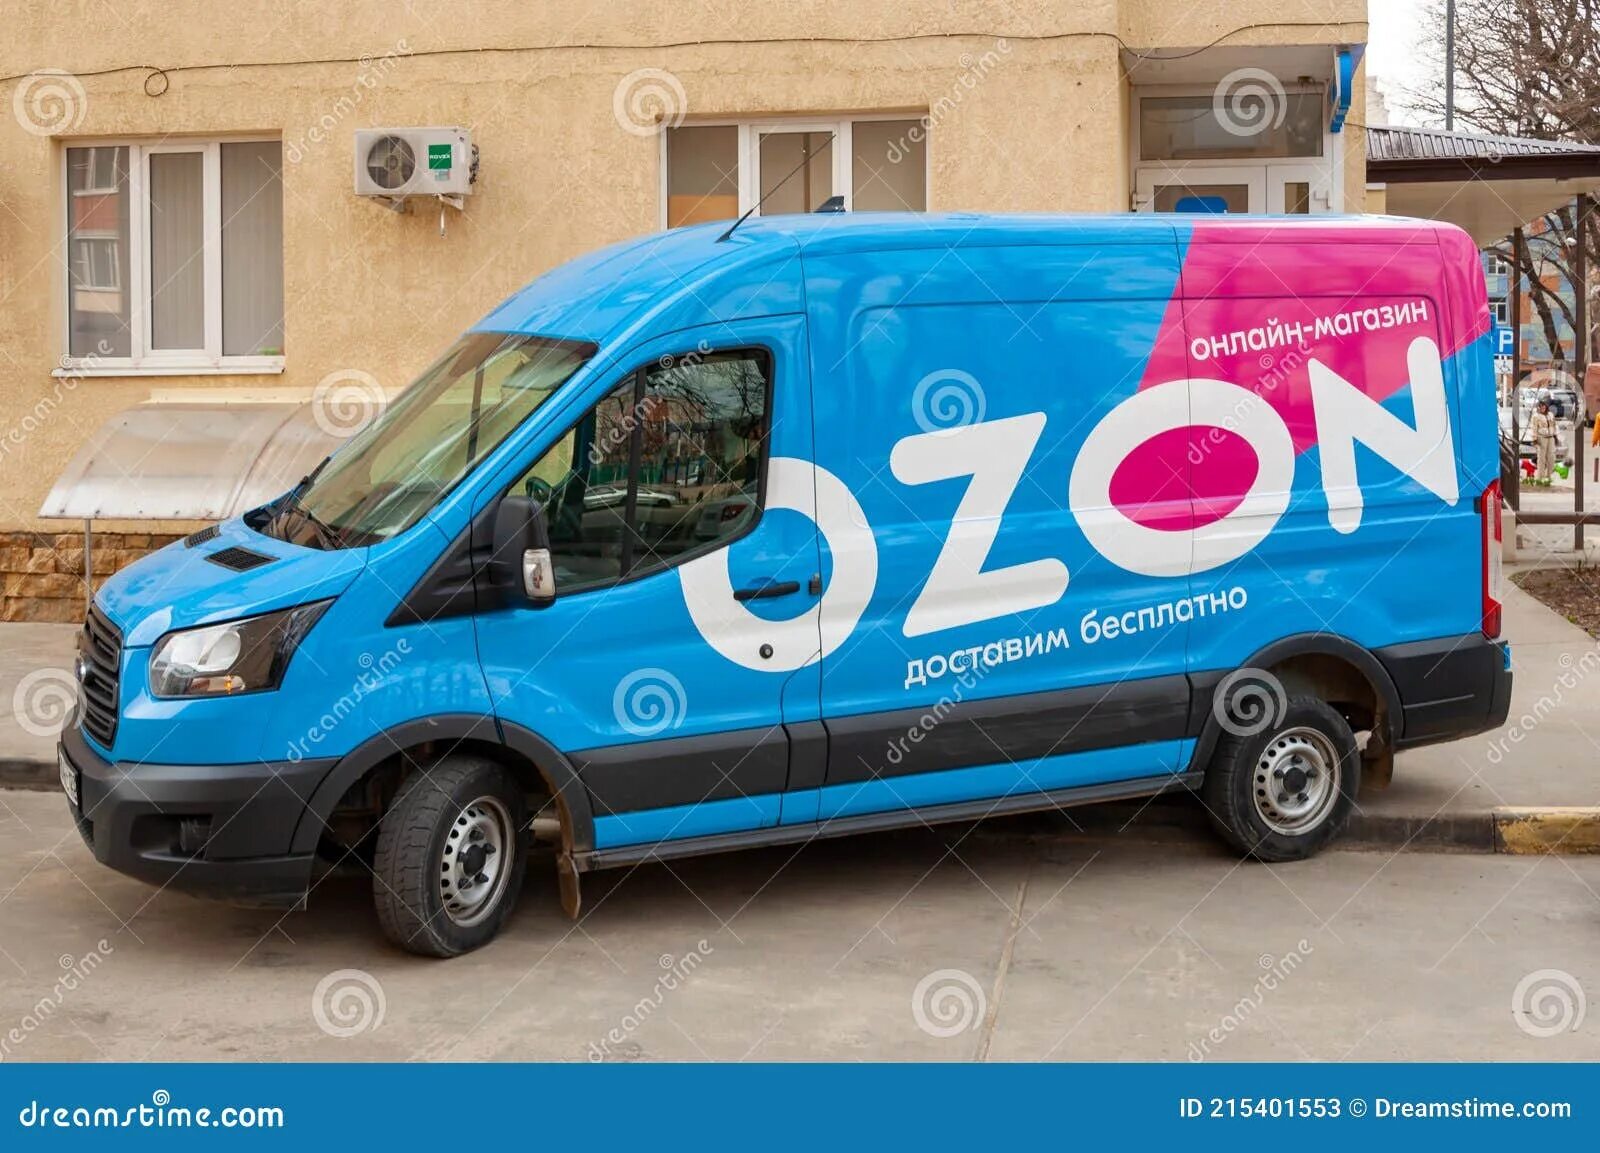 Авто на озоне цена. Форд Транзит Озон. Ford Transit OZON будка. Форд Транзит Озон Озон. Автомобили Озон компании Форд Транзит.